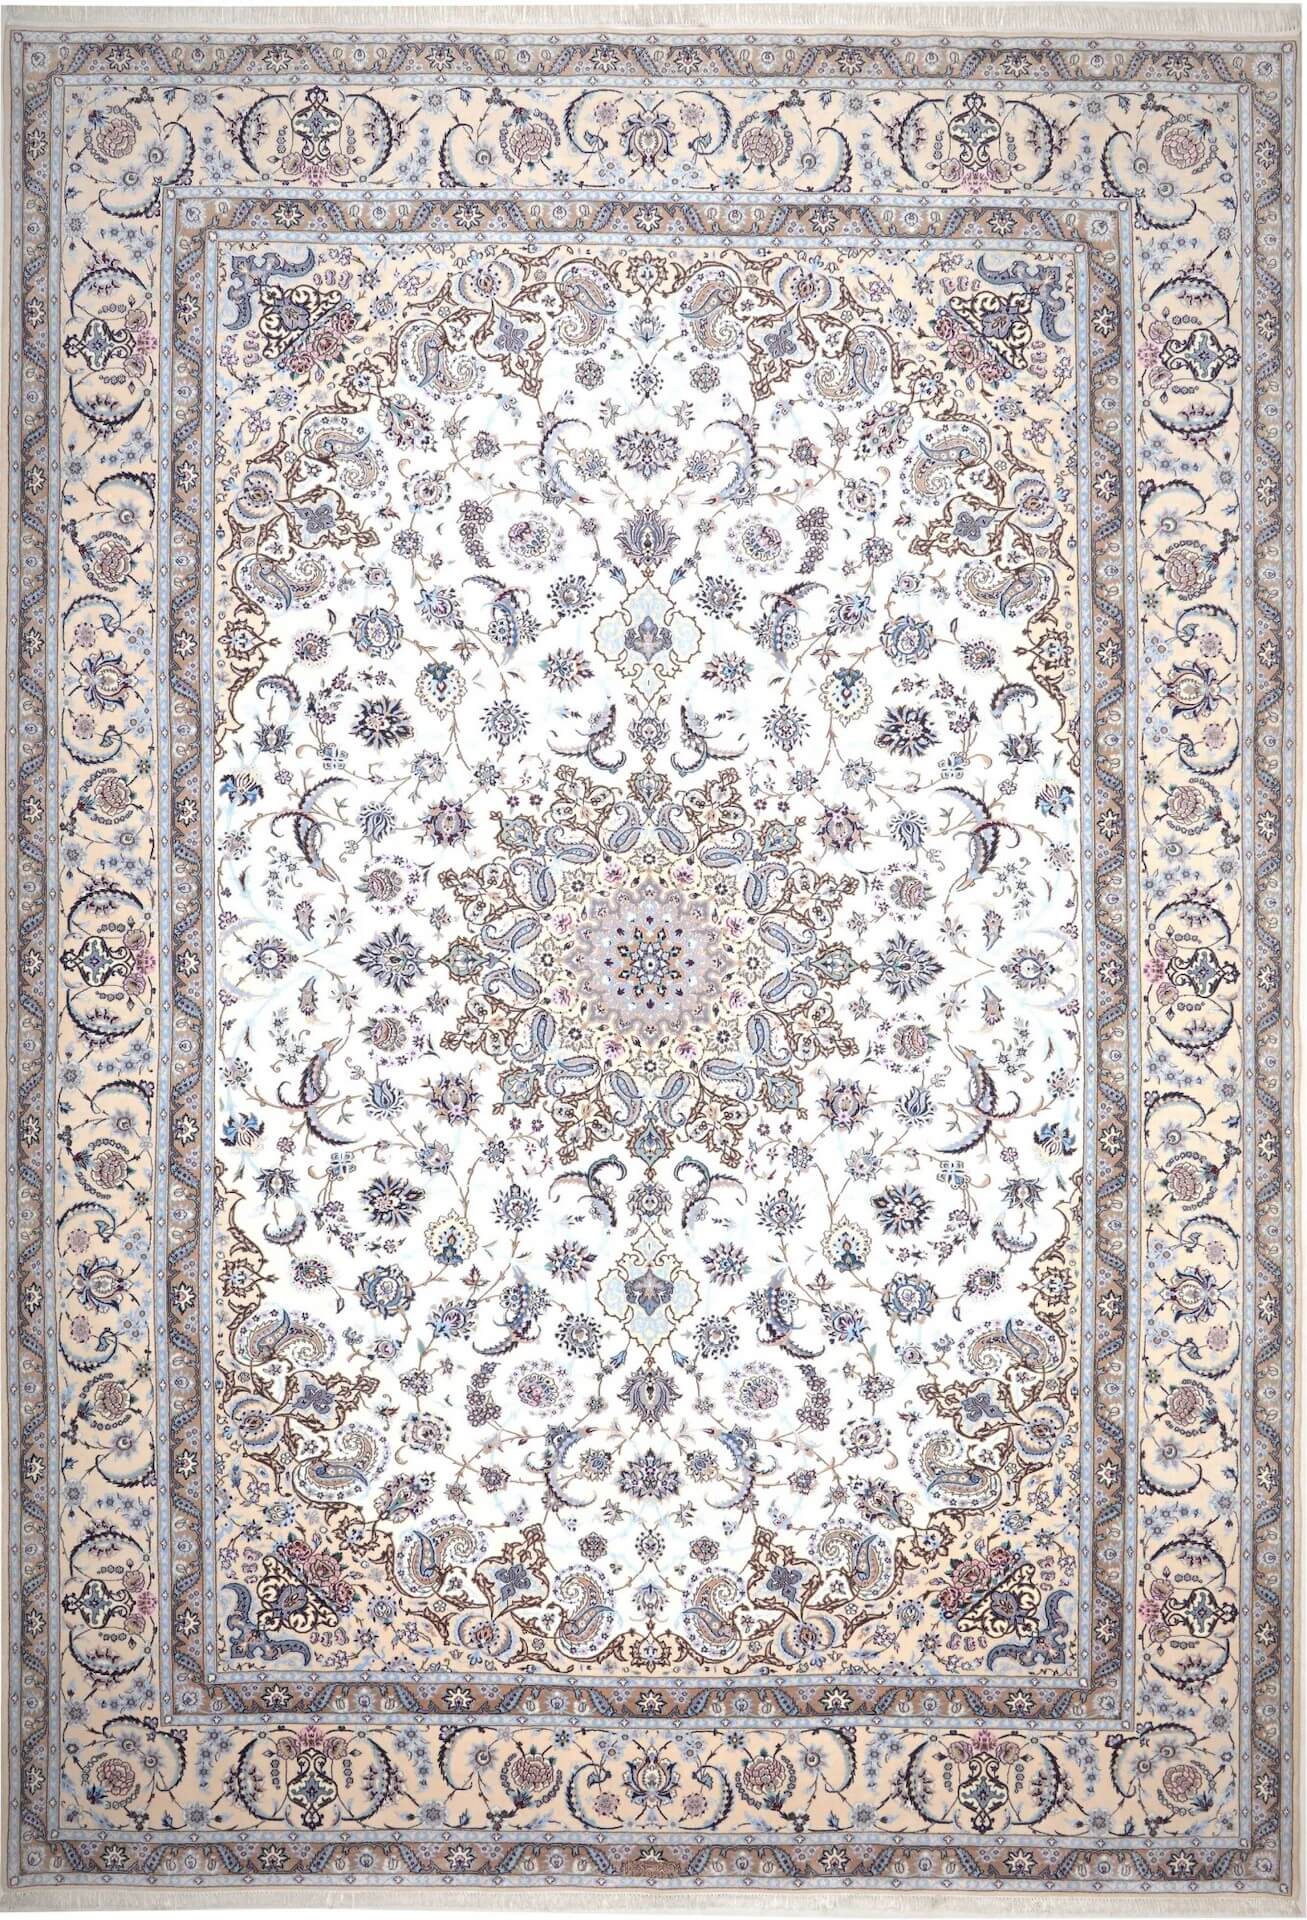 Nain Teppich 6 LA, handgeknüpft aus Schurwolle, Hauptfarbe Beige, 259 x 379 cm, Draufsicht